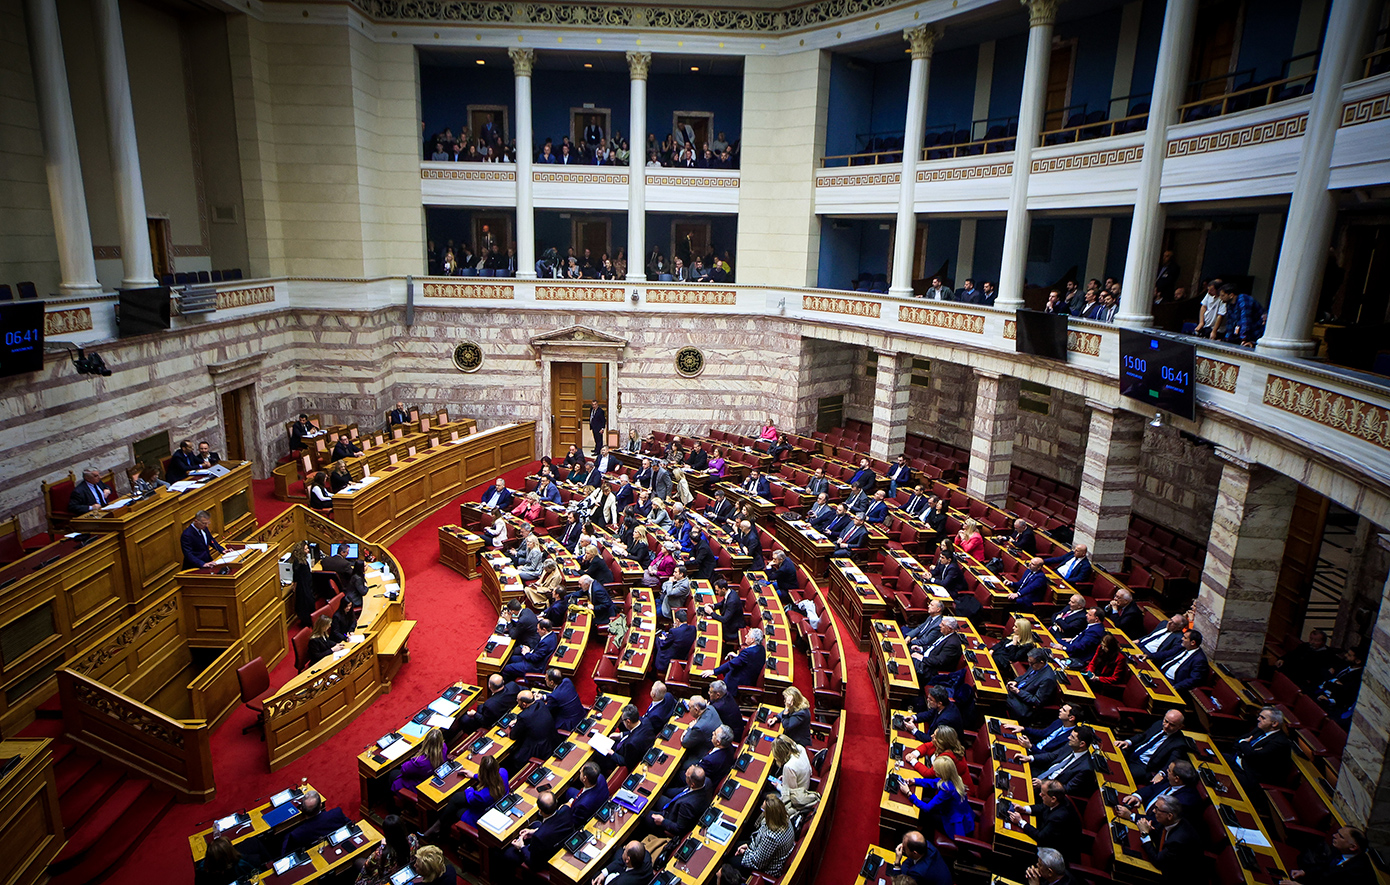 Οι 10 από τις 17 Διευθύνσεις του Κοινοβουλίου είναι κατειλημμένες από γυναίκες, όπως και τα 40 από τα 58 Τμήματα